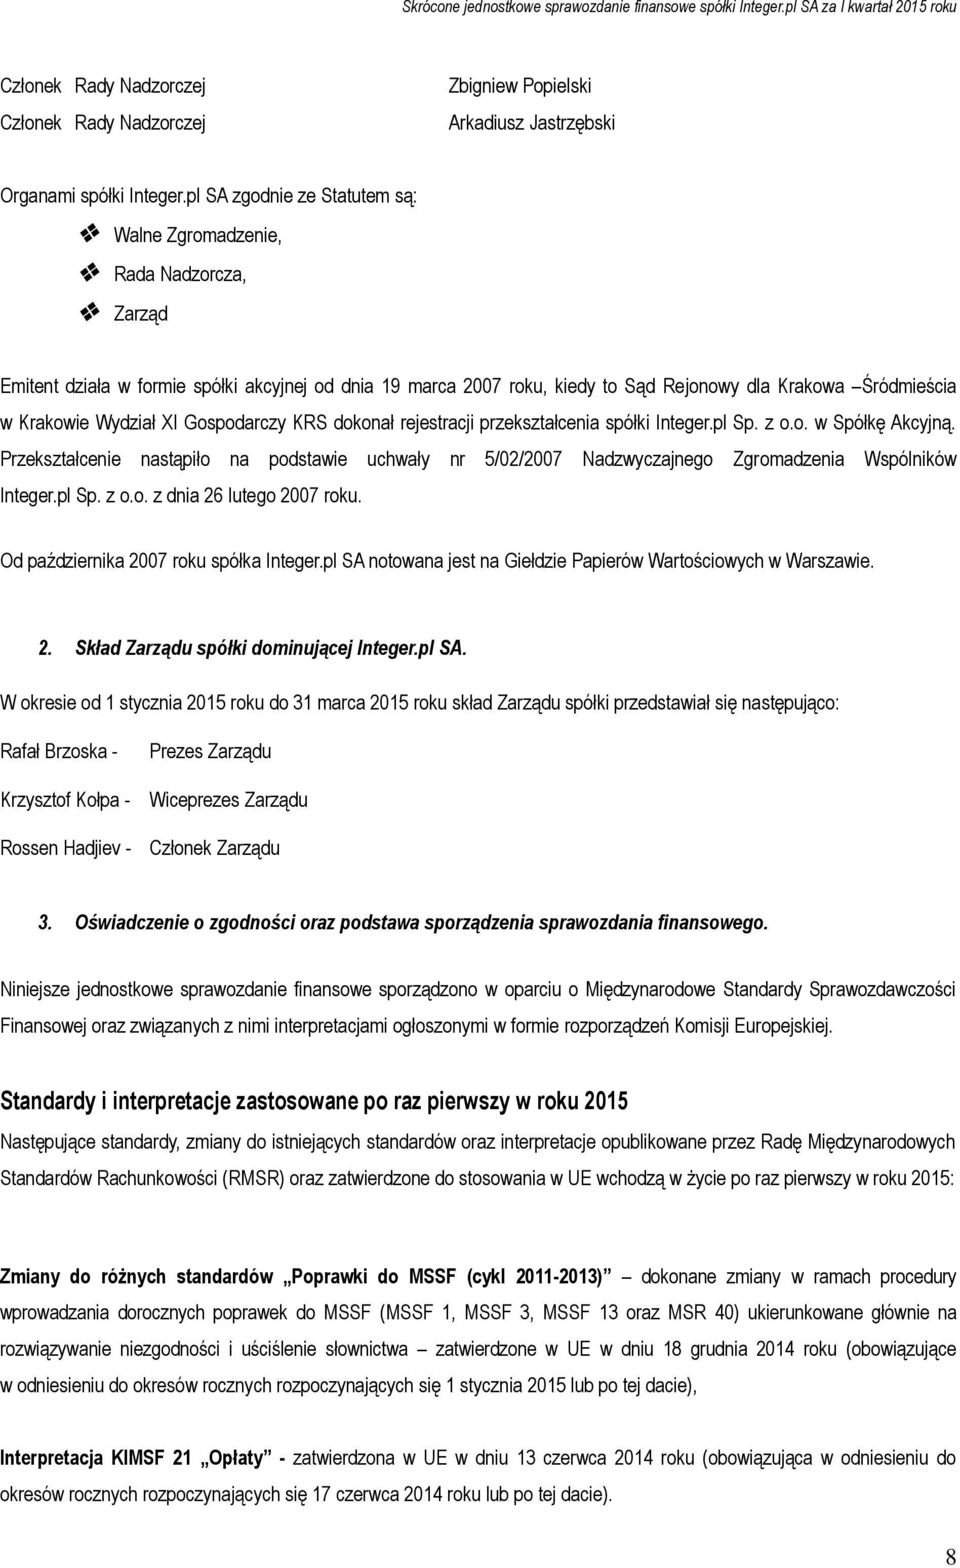 Wydział XI Gospodarczy KRS dokonał rejestracji przekształcenia spółki Integer.pl Sp. z o.o. w Spółkę Akcyjną.